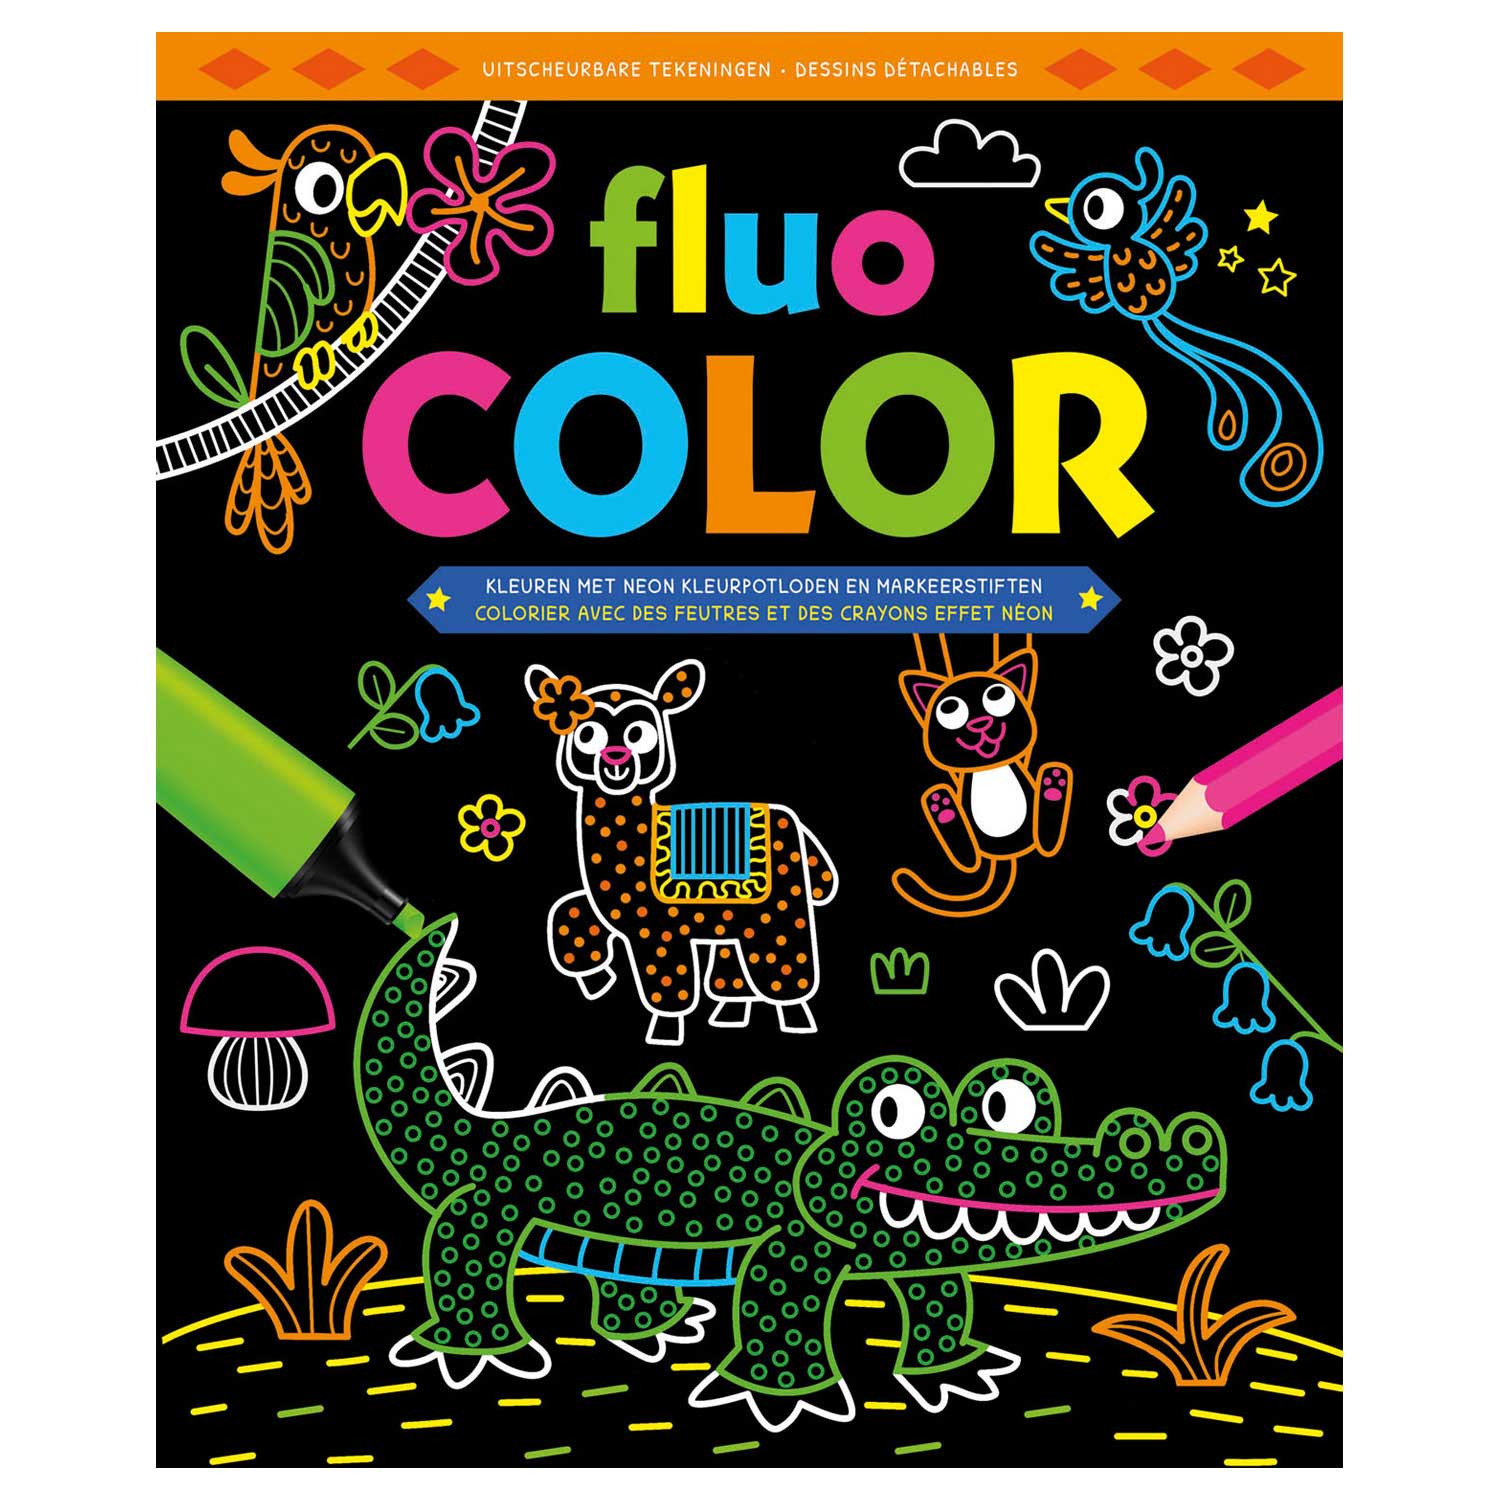 Luchtvaart hefboom ondersteboven Fluo Color Kleurboek online kopen? | Lobbes Speelgoed